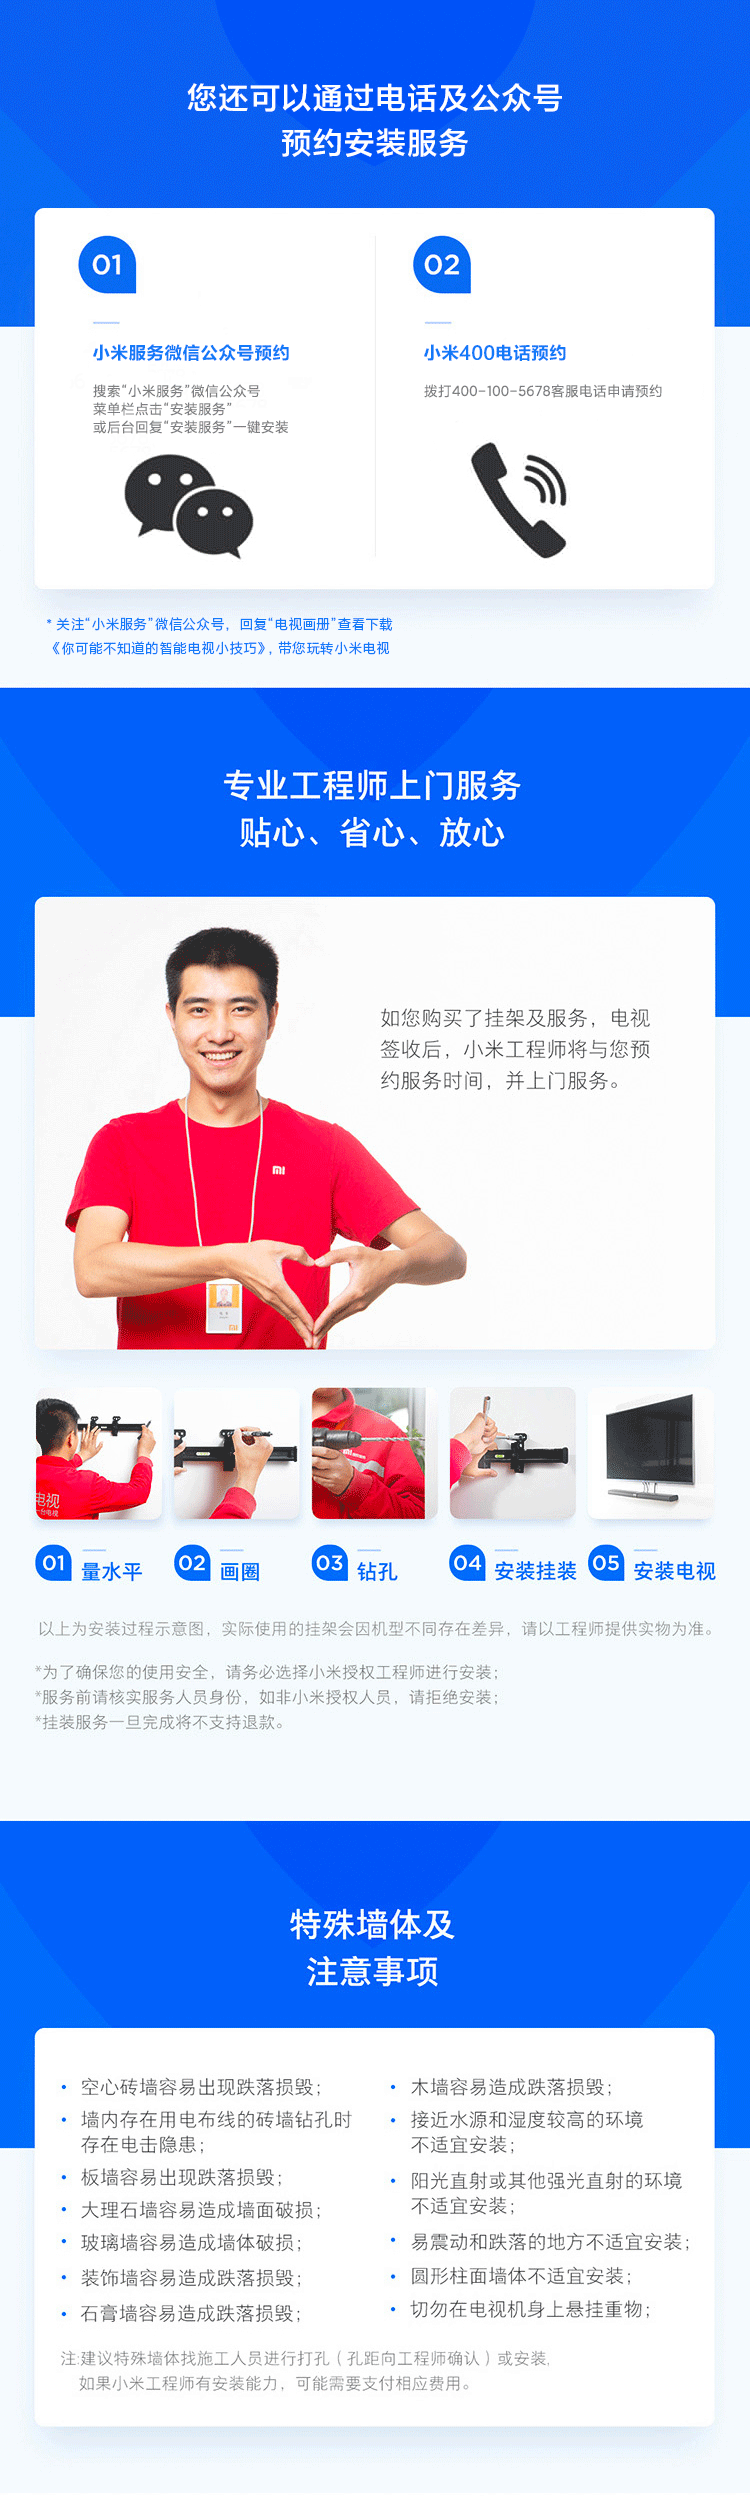 小米电视 Redmi A65 65英寸4K HDR超高清 立体声澎湃音效 智能网络教育电视L65R6-A